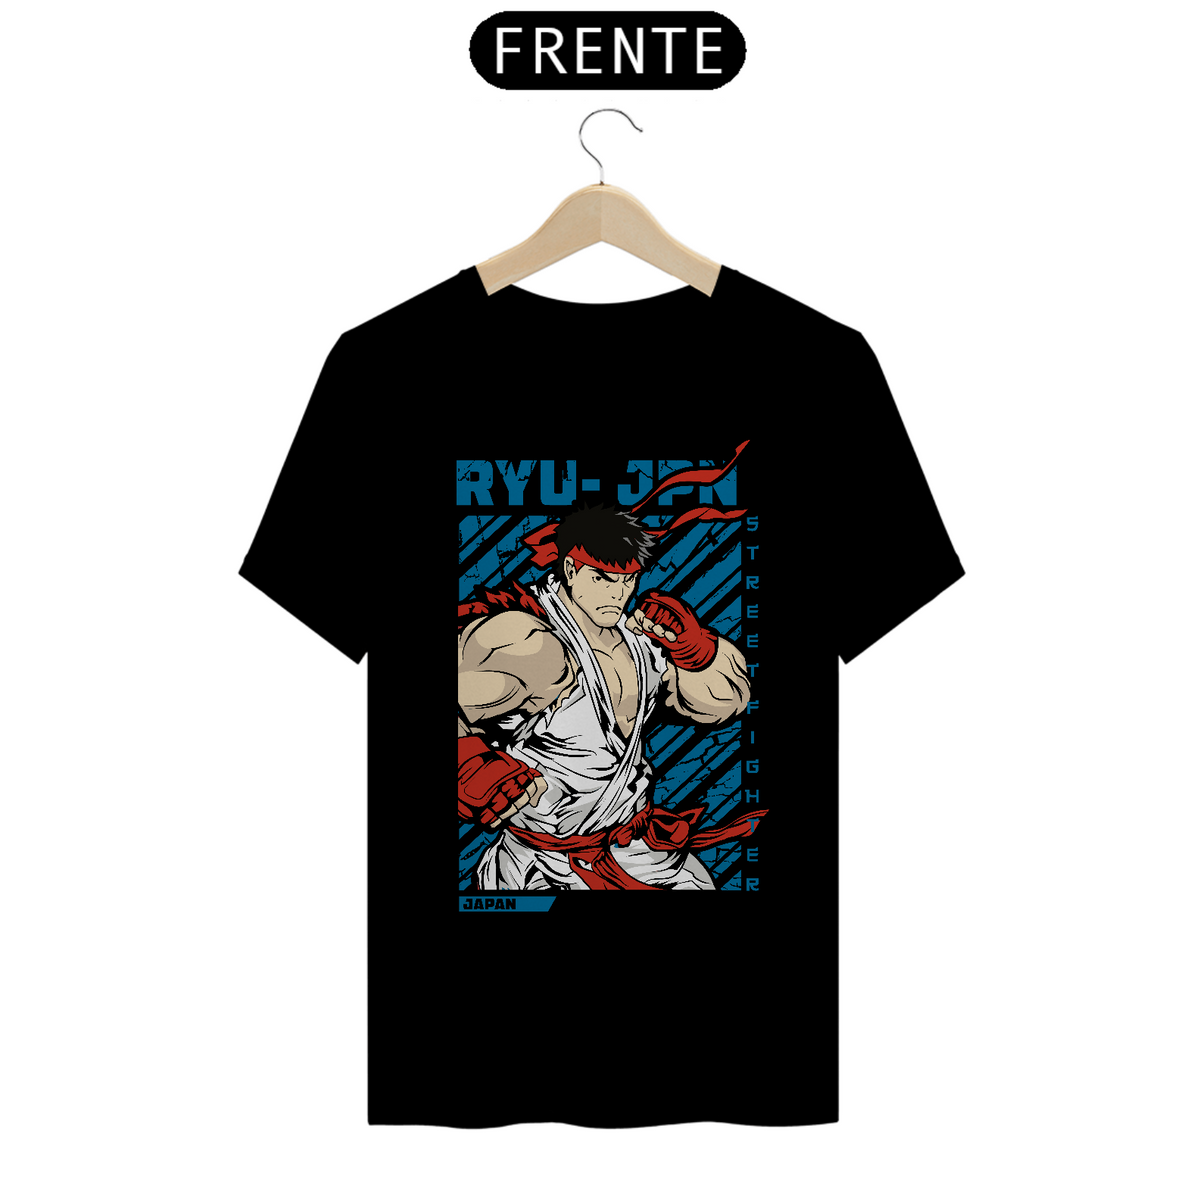 Nome do produto: Camiseta Ryu SF2